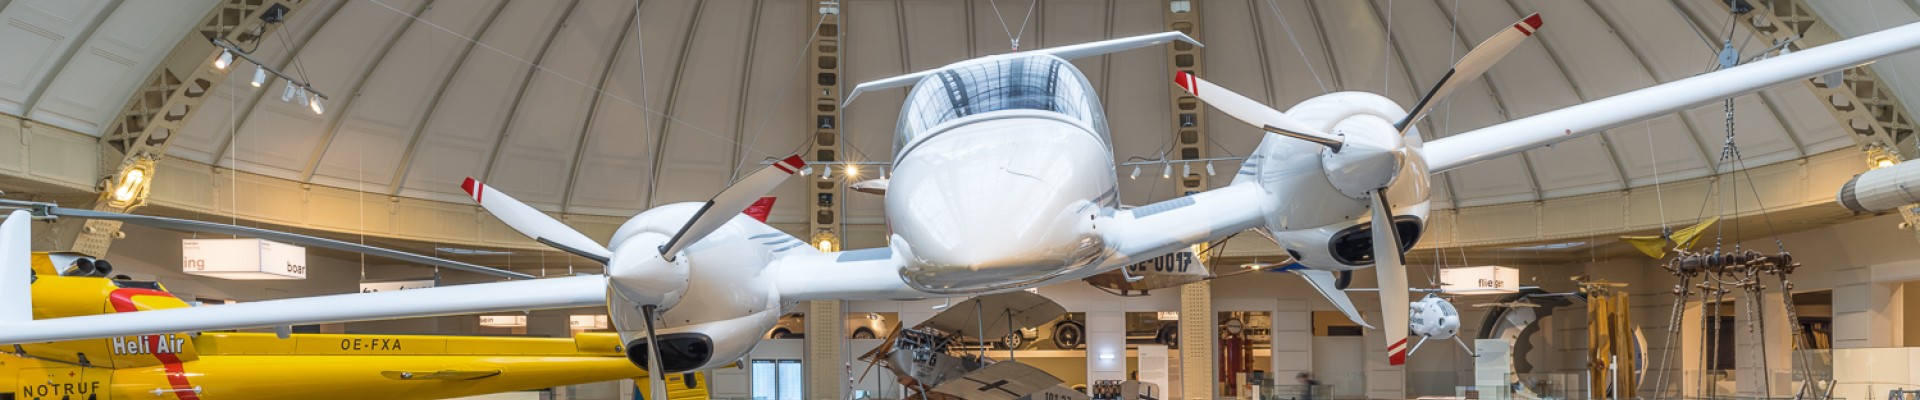 Das Propellerfugzeug "Diamond DA42" in der Ausstellung "Mobilität": 